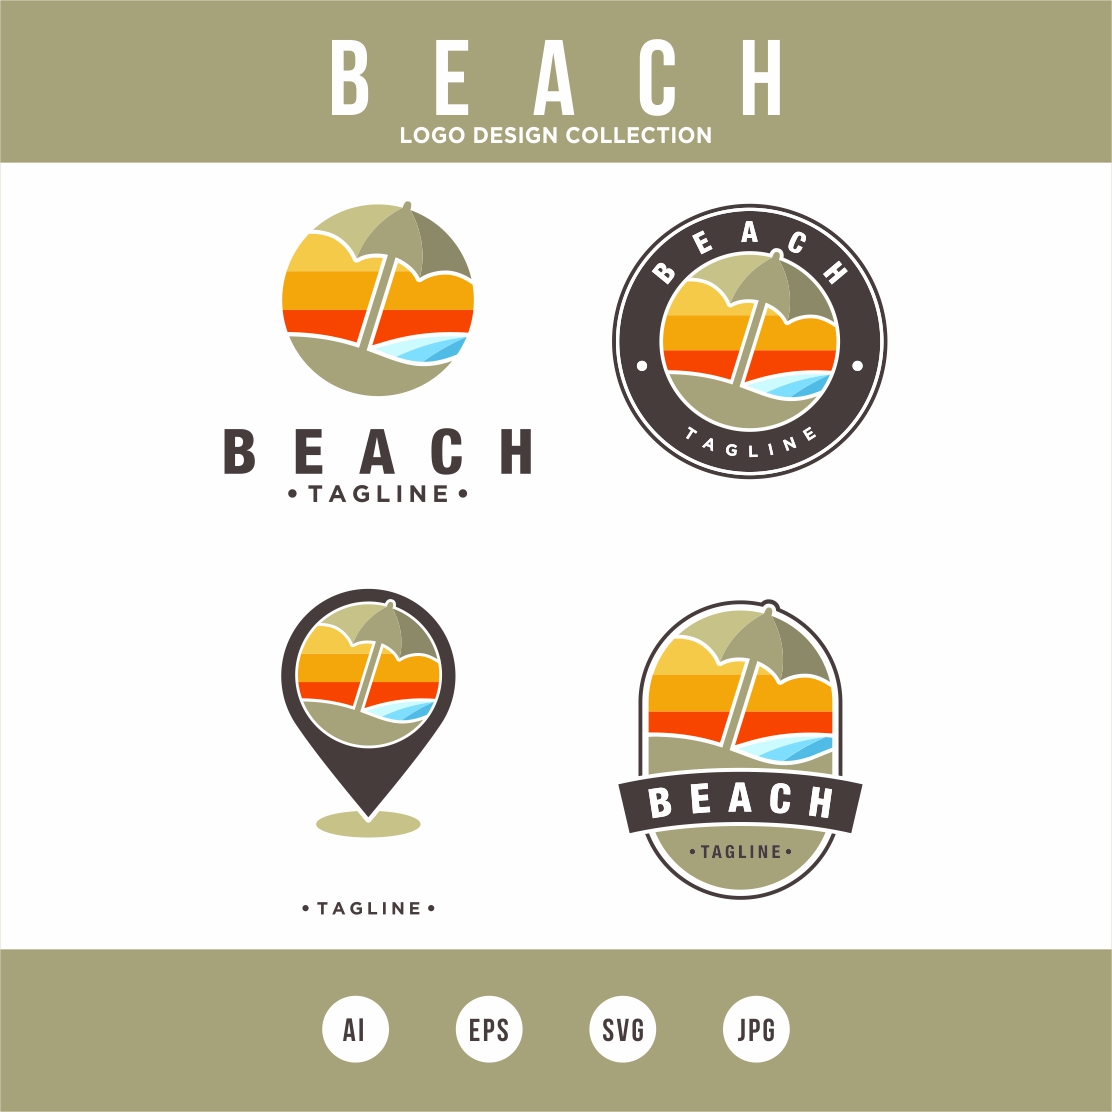 Beach logo design collection with beach umbrella Vector - only 10$ cover image.